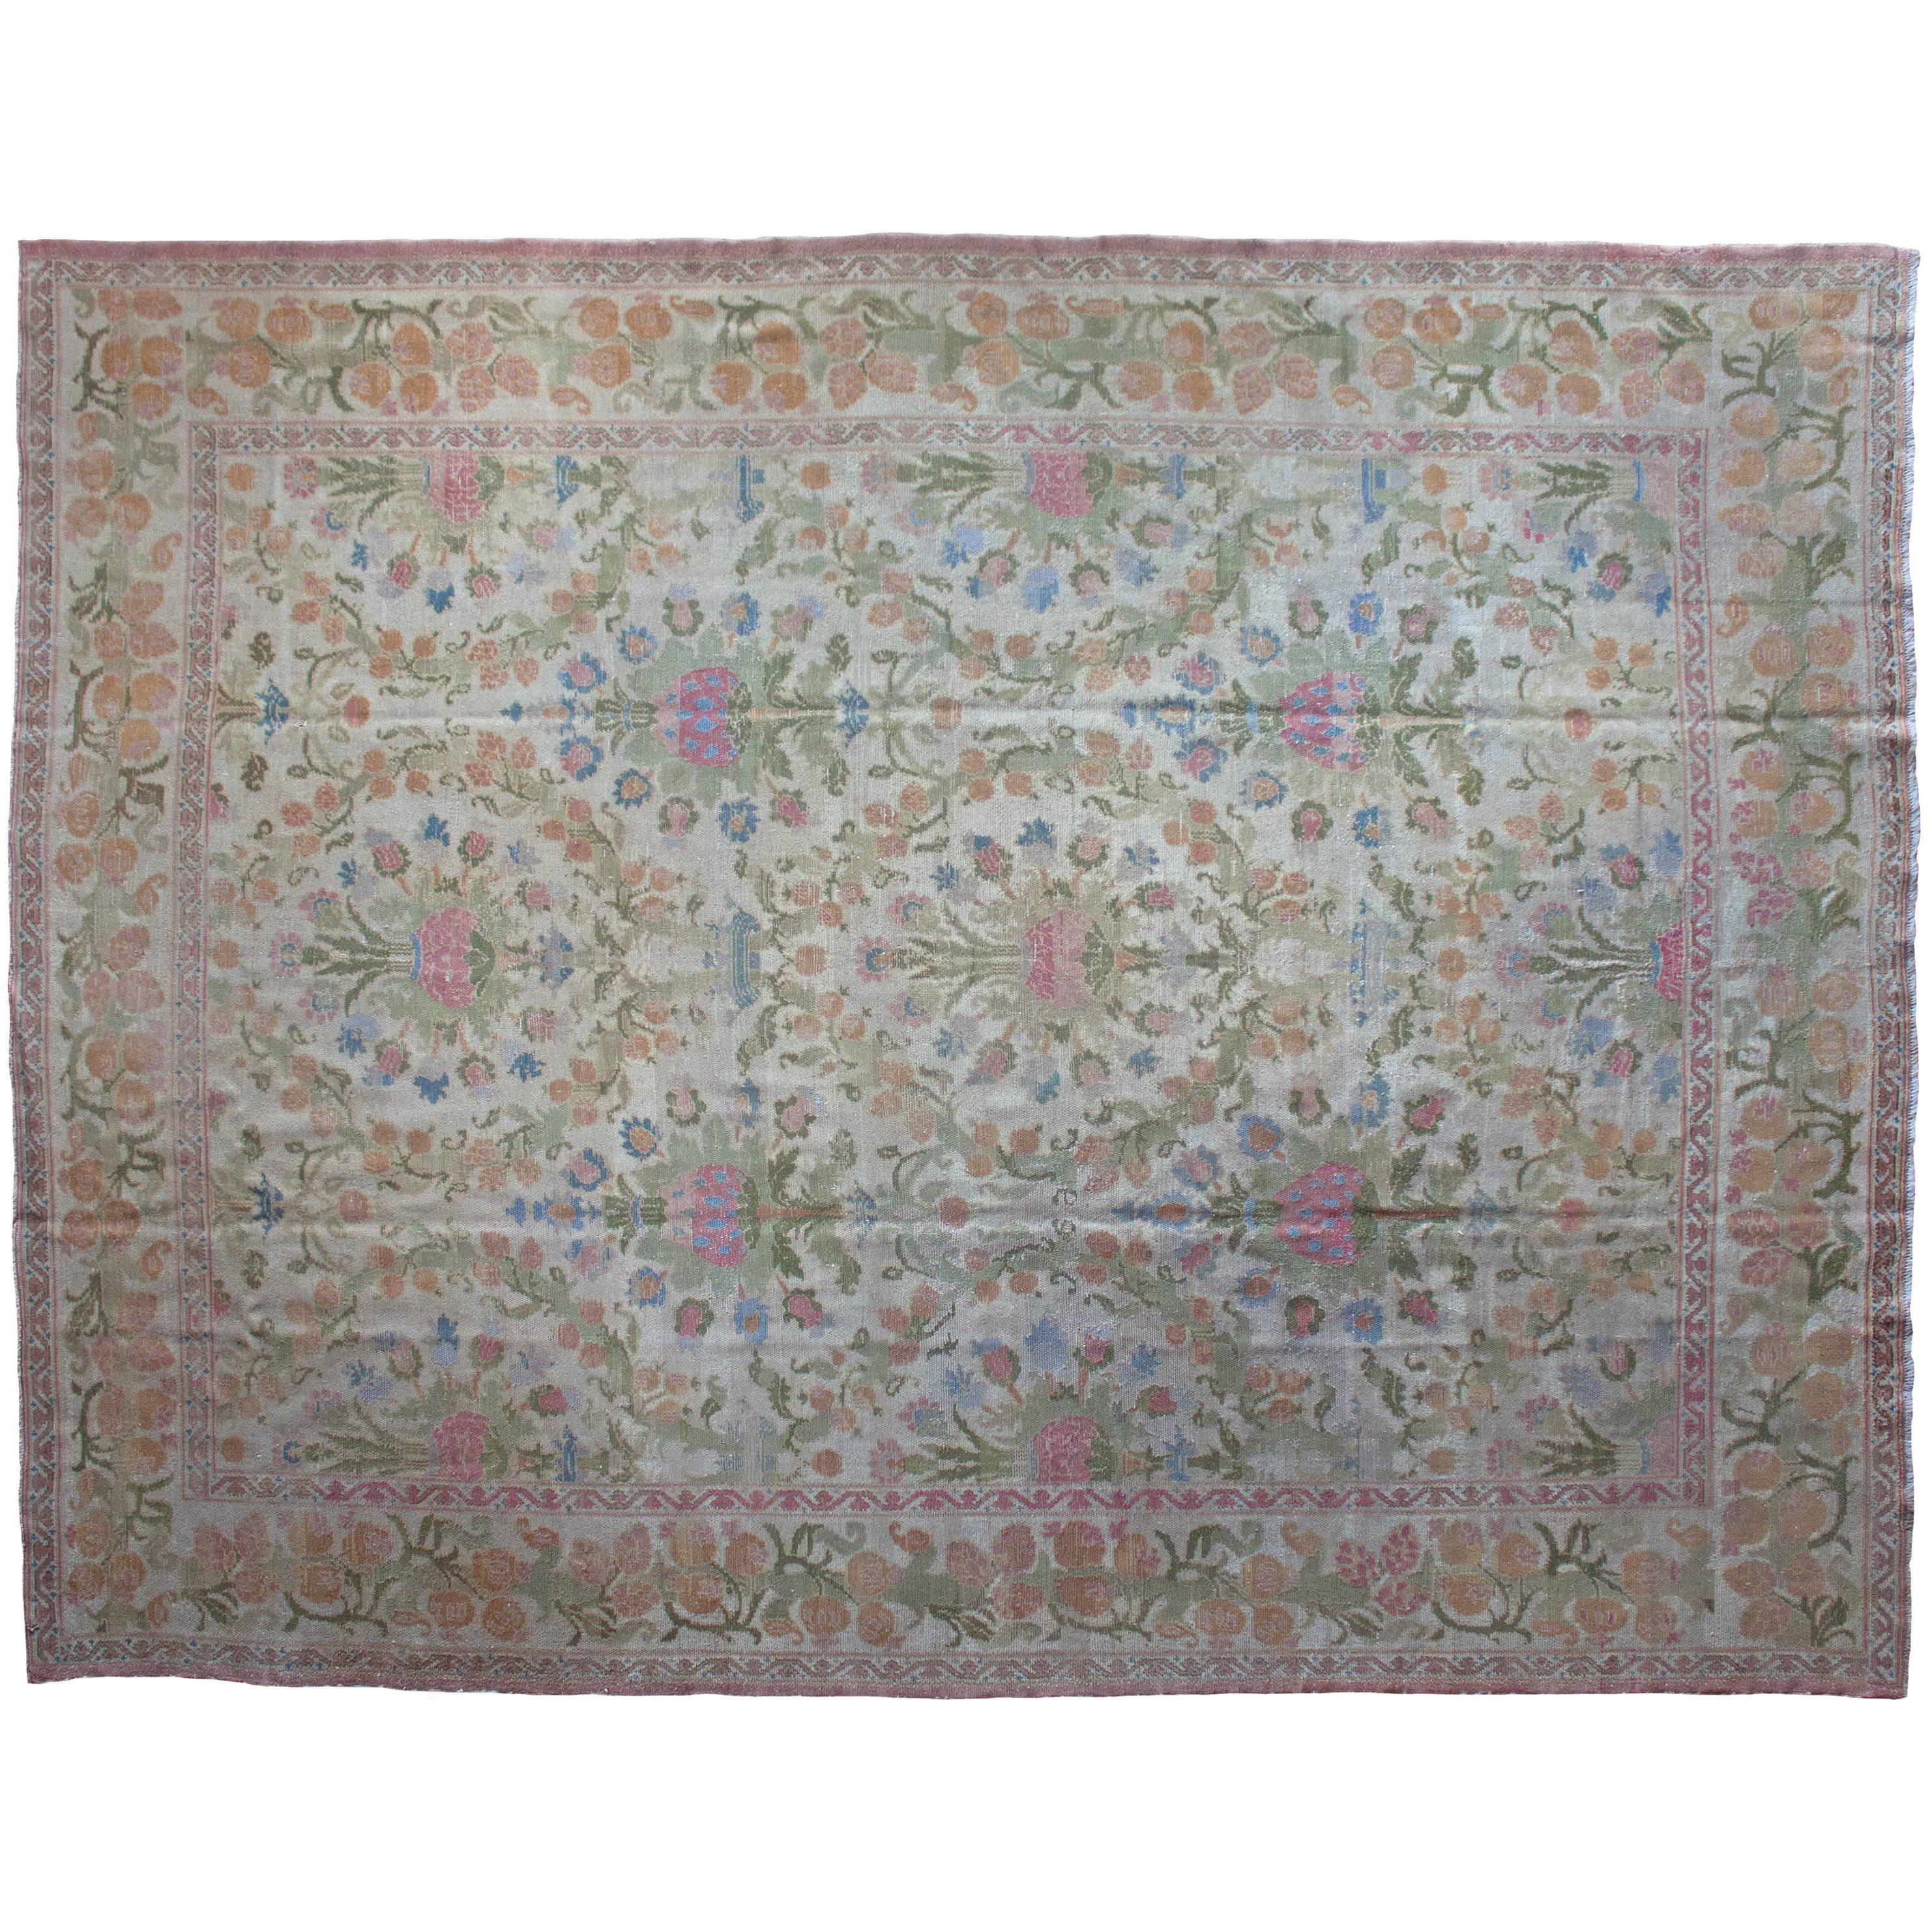 Antique Cuenca Spanish Carpet